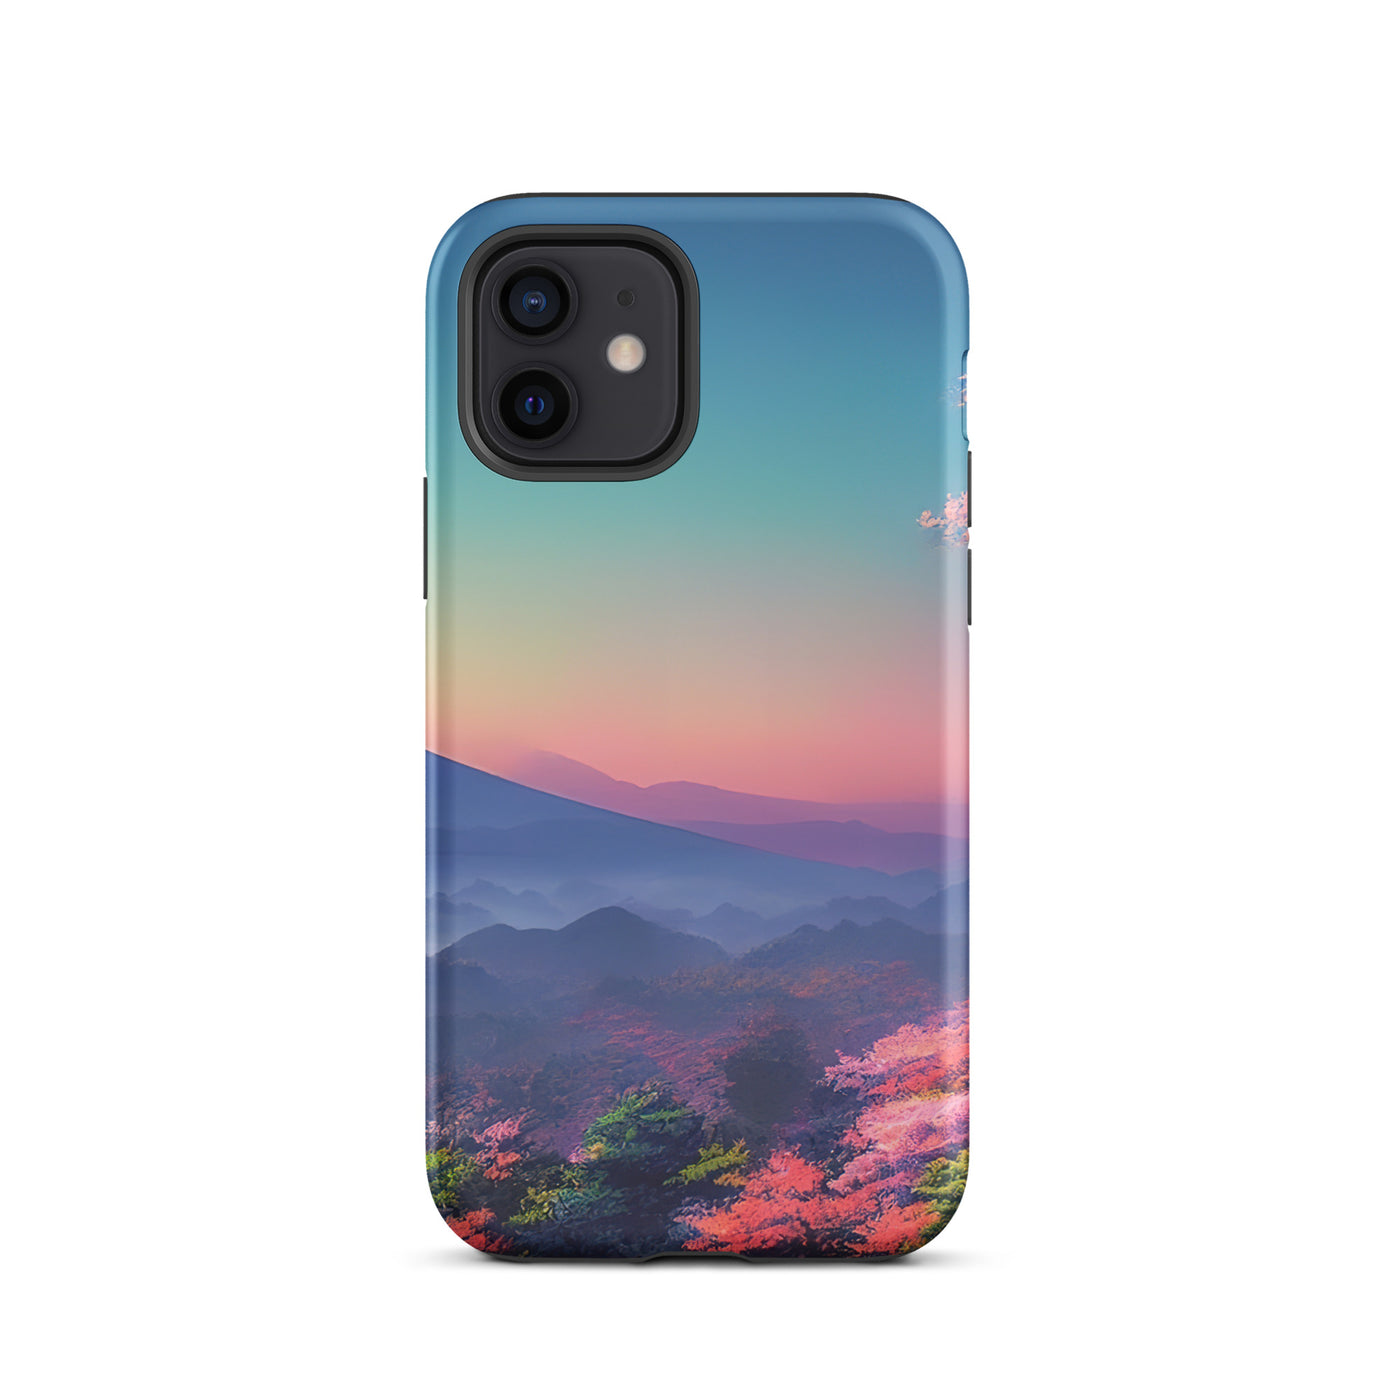 Berg und Wald mit pinken Bäumen - Landschaftsmalerei - iPhone Schutzhülle (robust) berge xxx iPhone 12